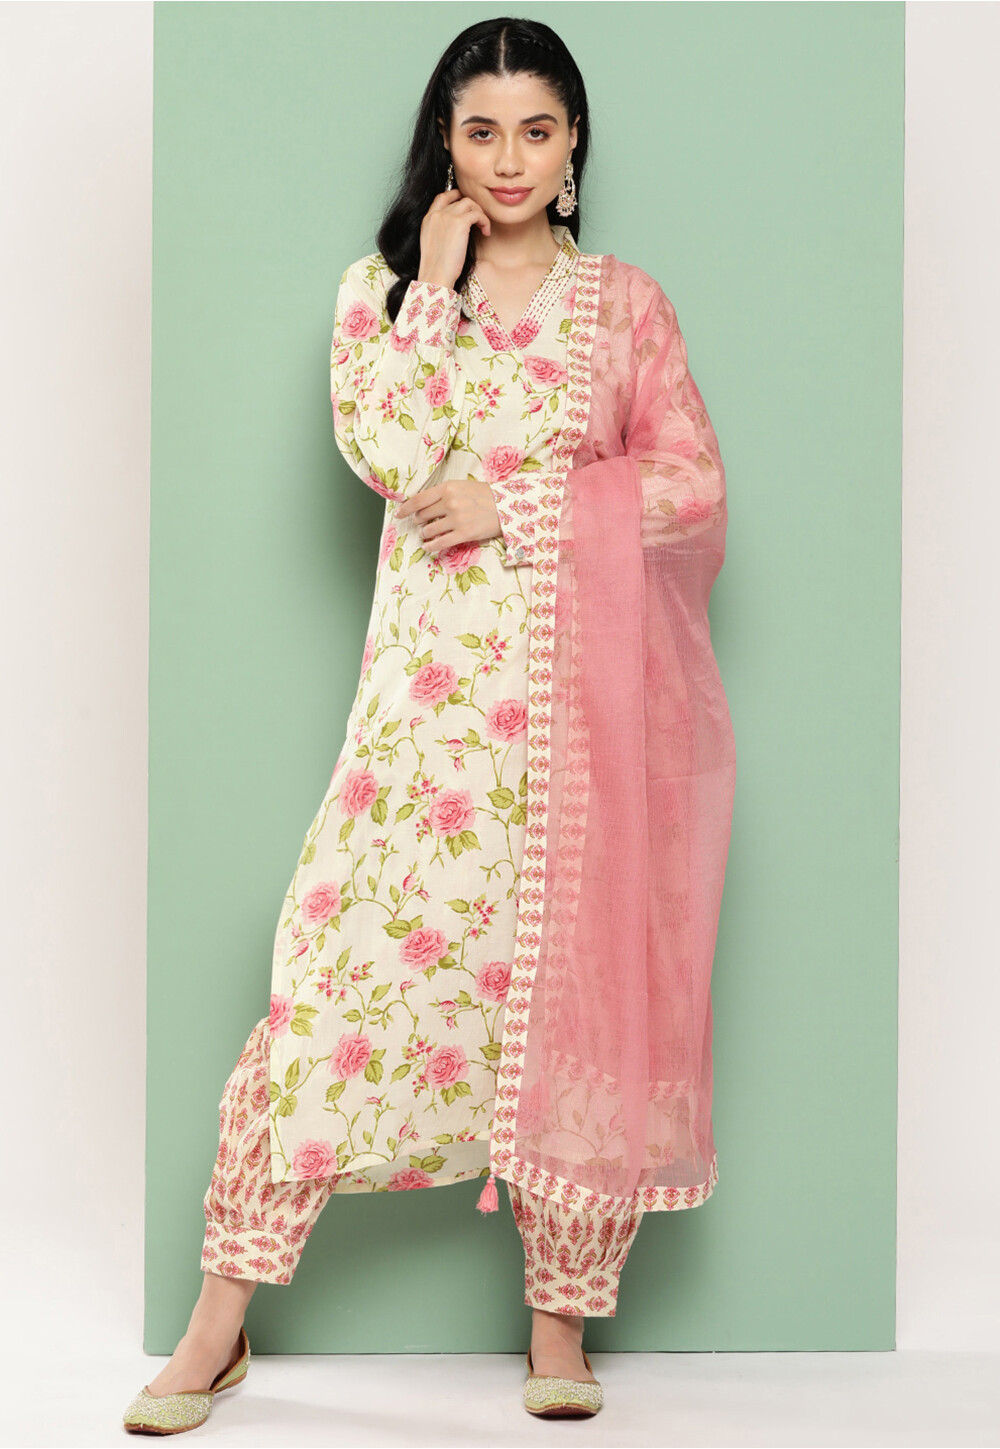 Punjabi Kurta Pajama - 25 Trending Designs for Men and Women | Indian  outfits, Indian fashion, Punjabi fashion